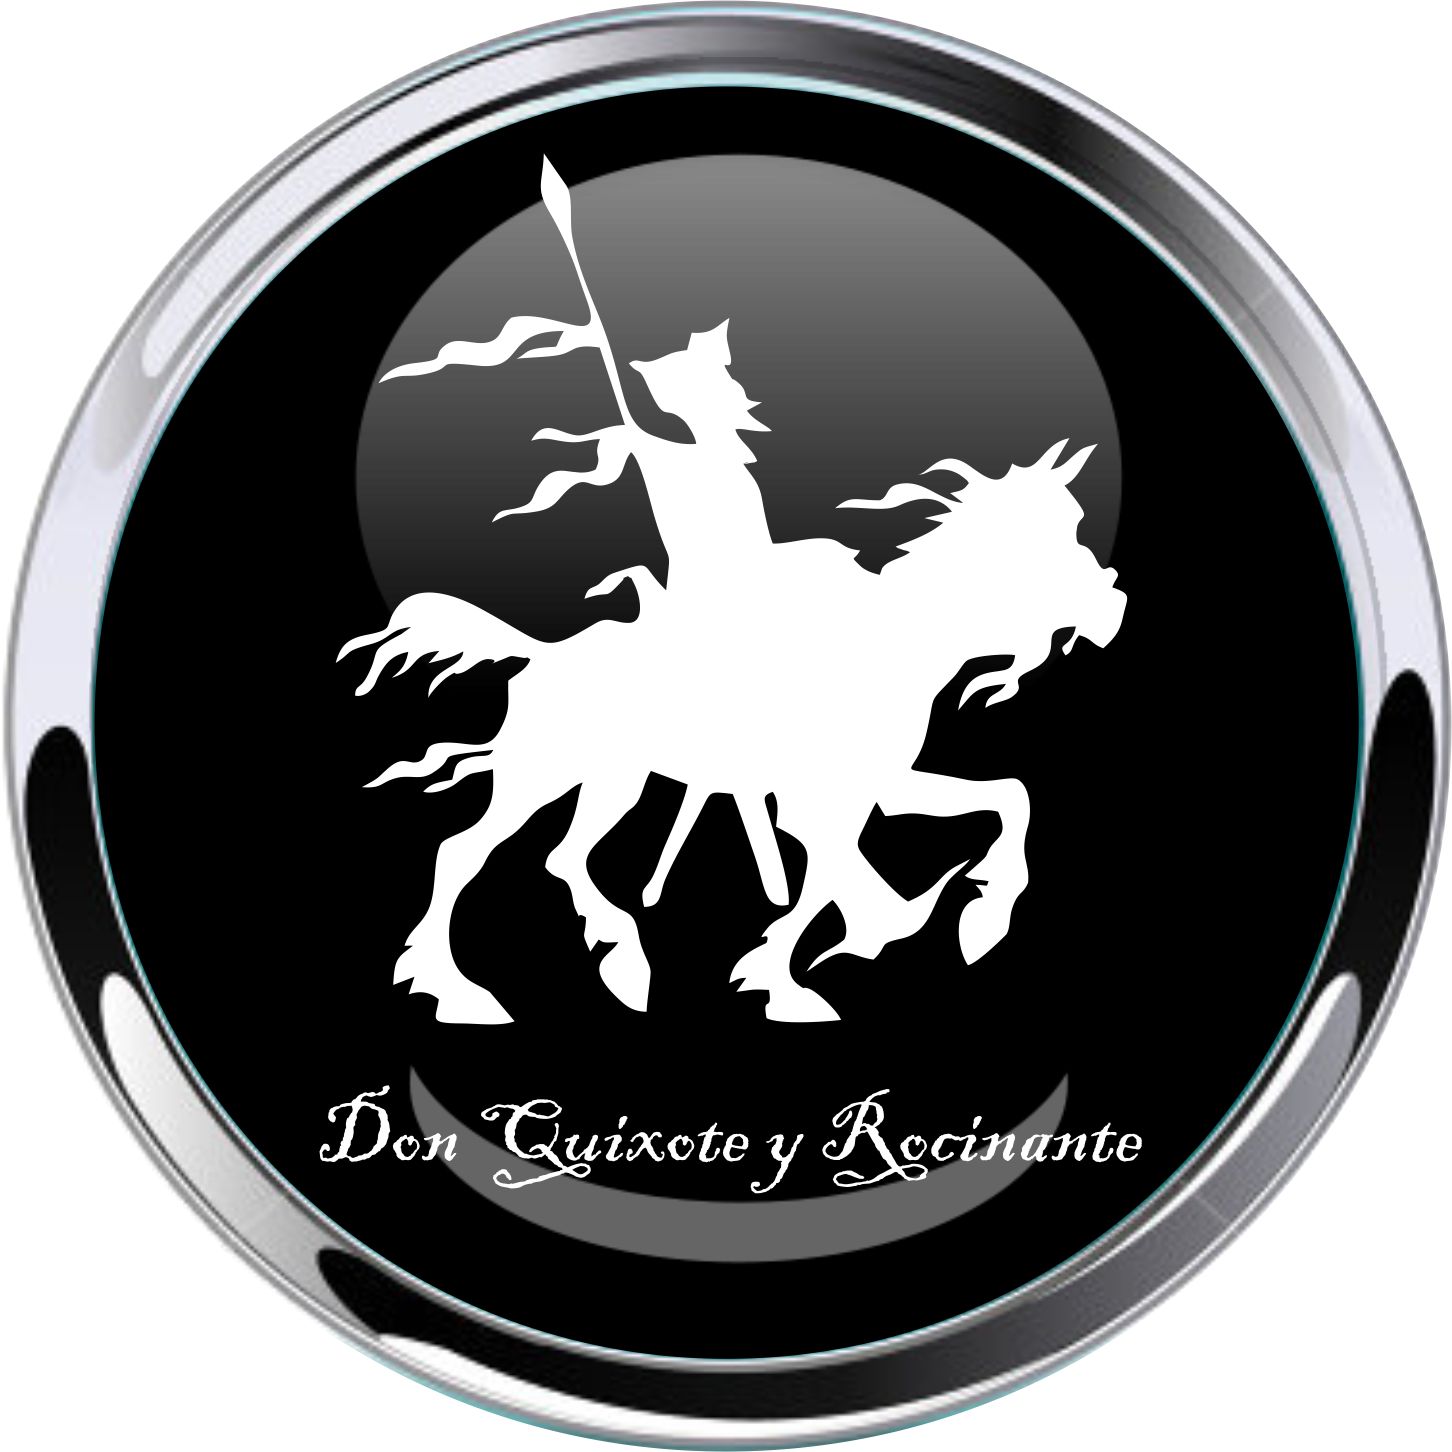 Don Quixote y Rocinante Car Emblem